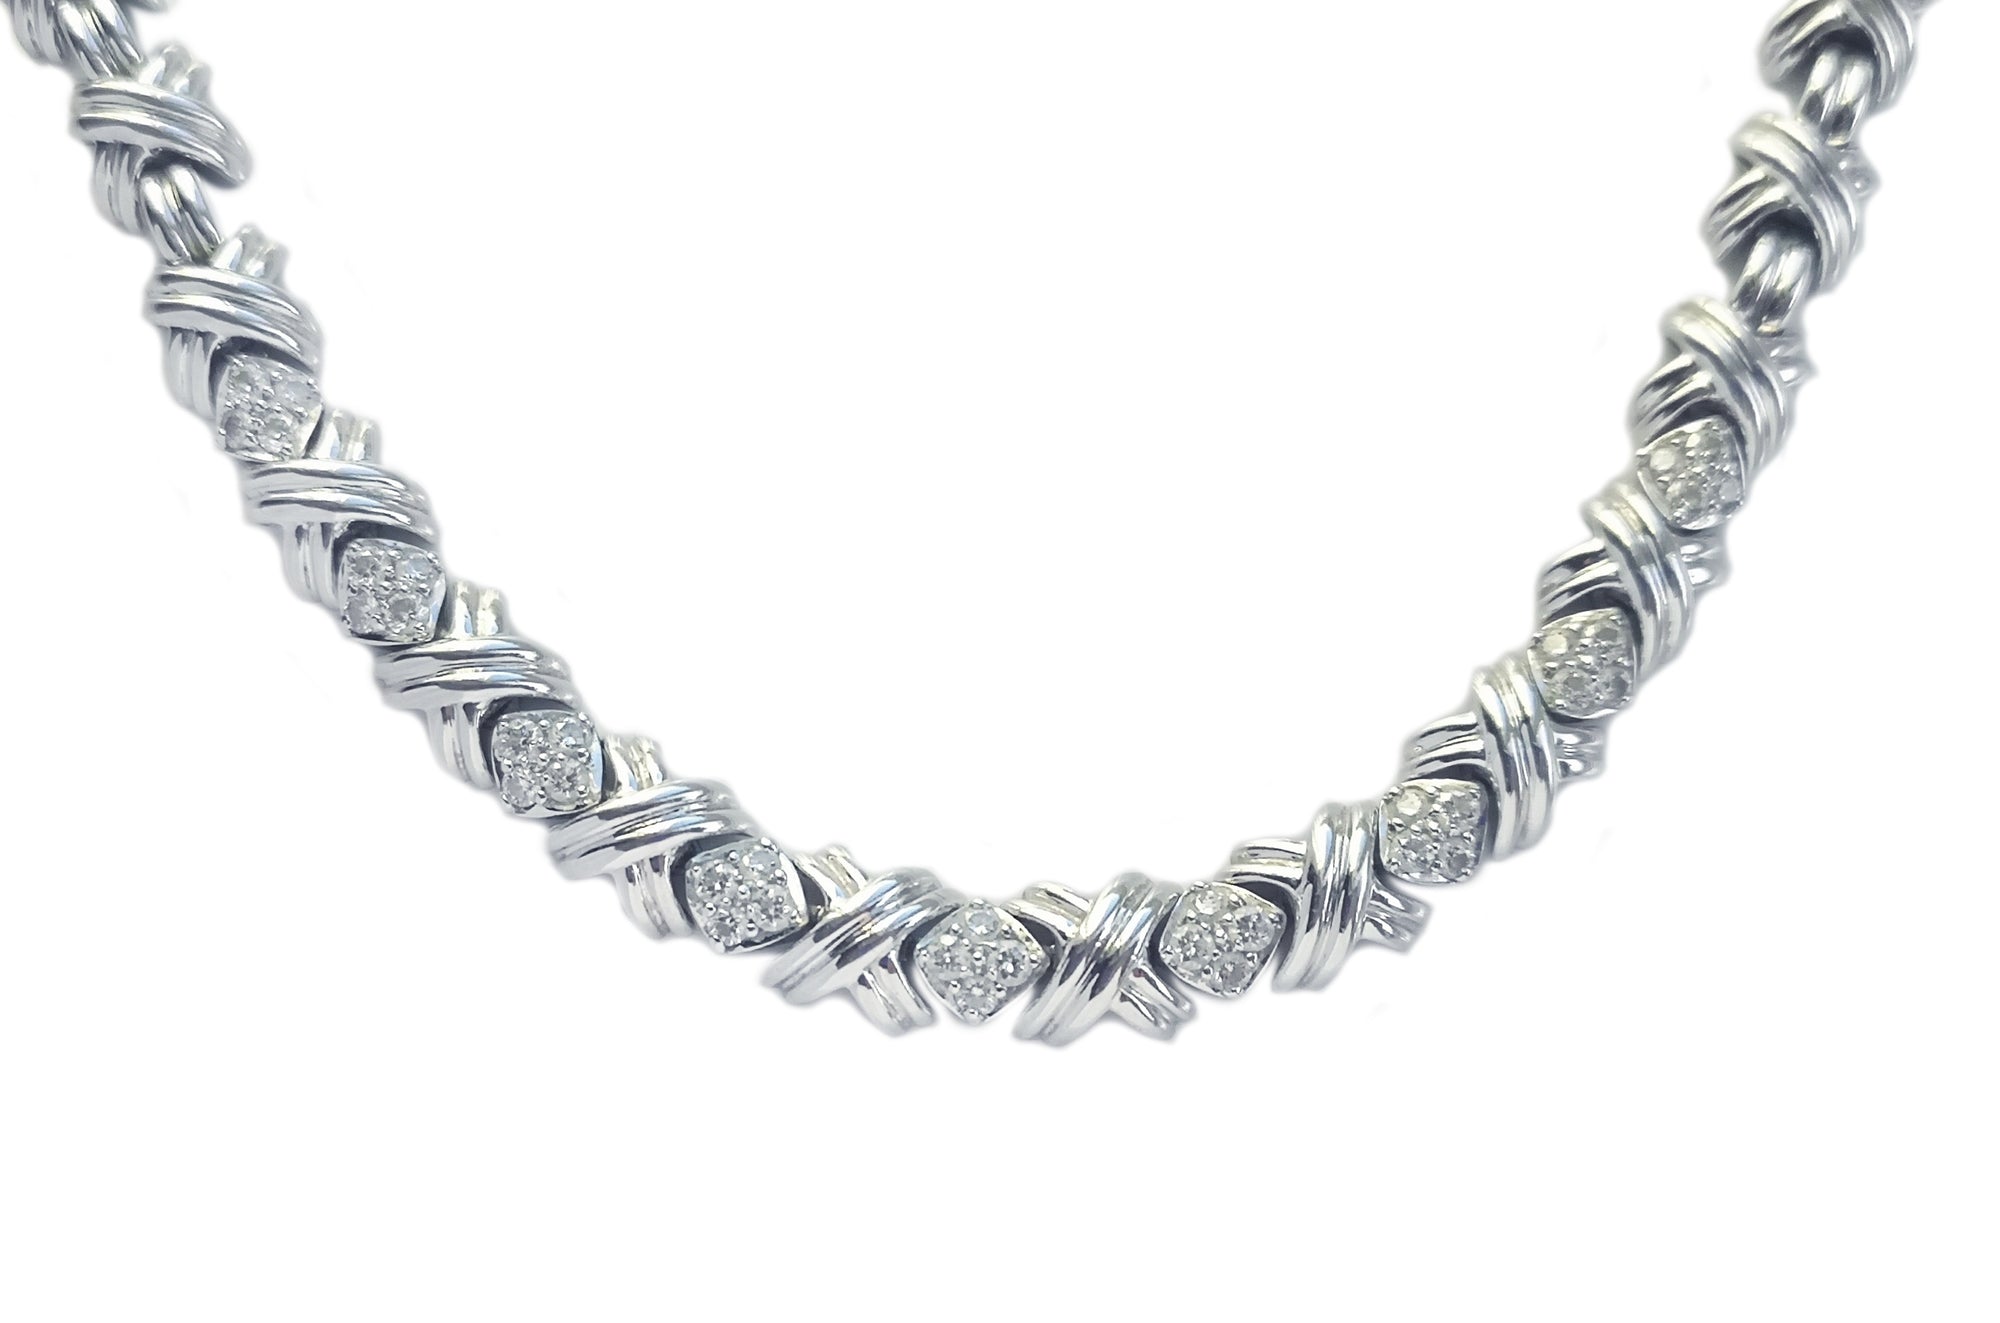 Tiffany & Co. Signature X 1.08ct Diamond Necklace in 18k White Gold